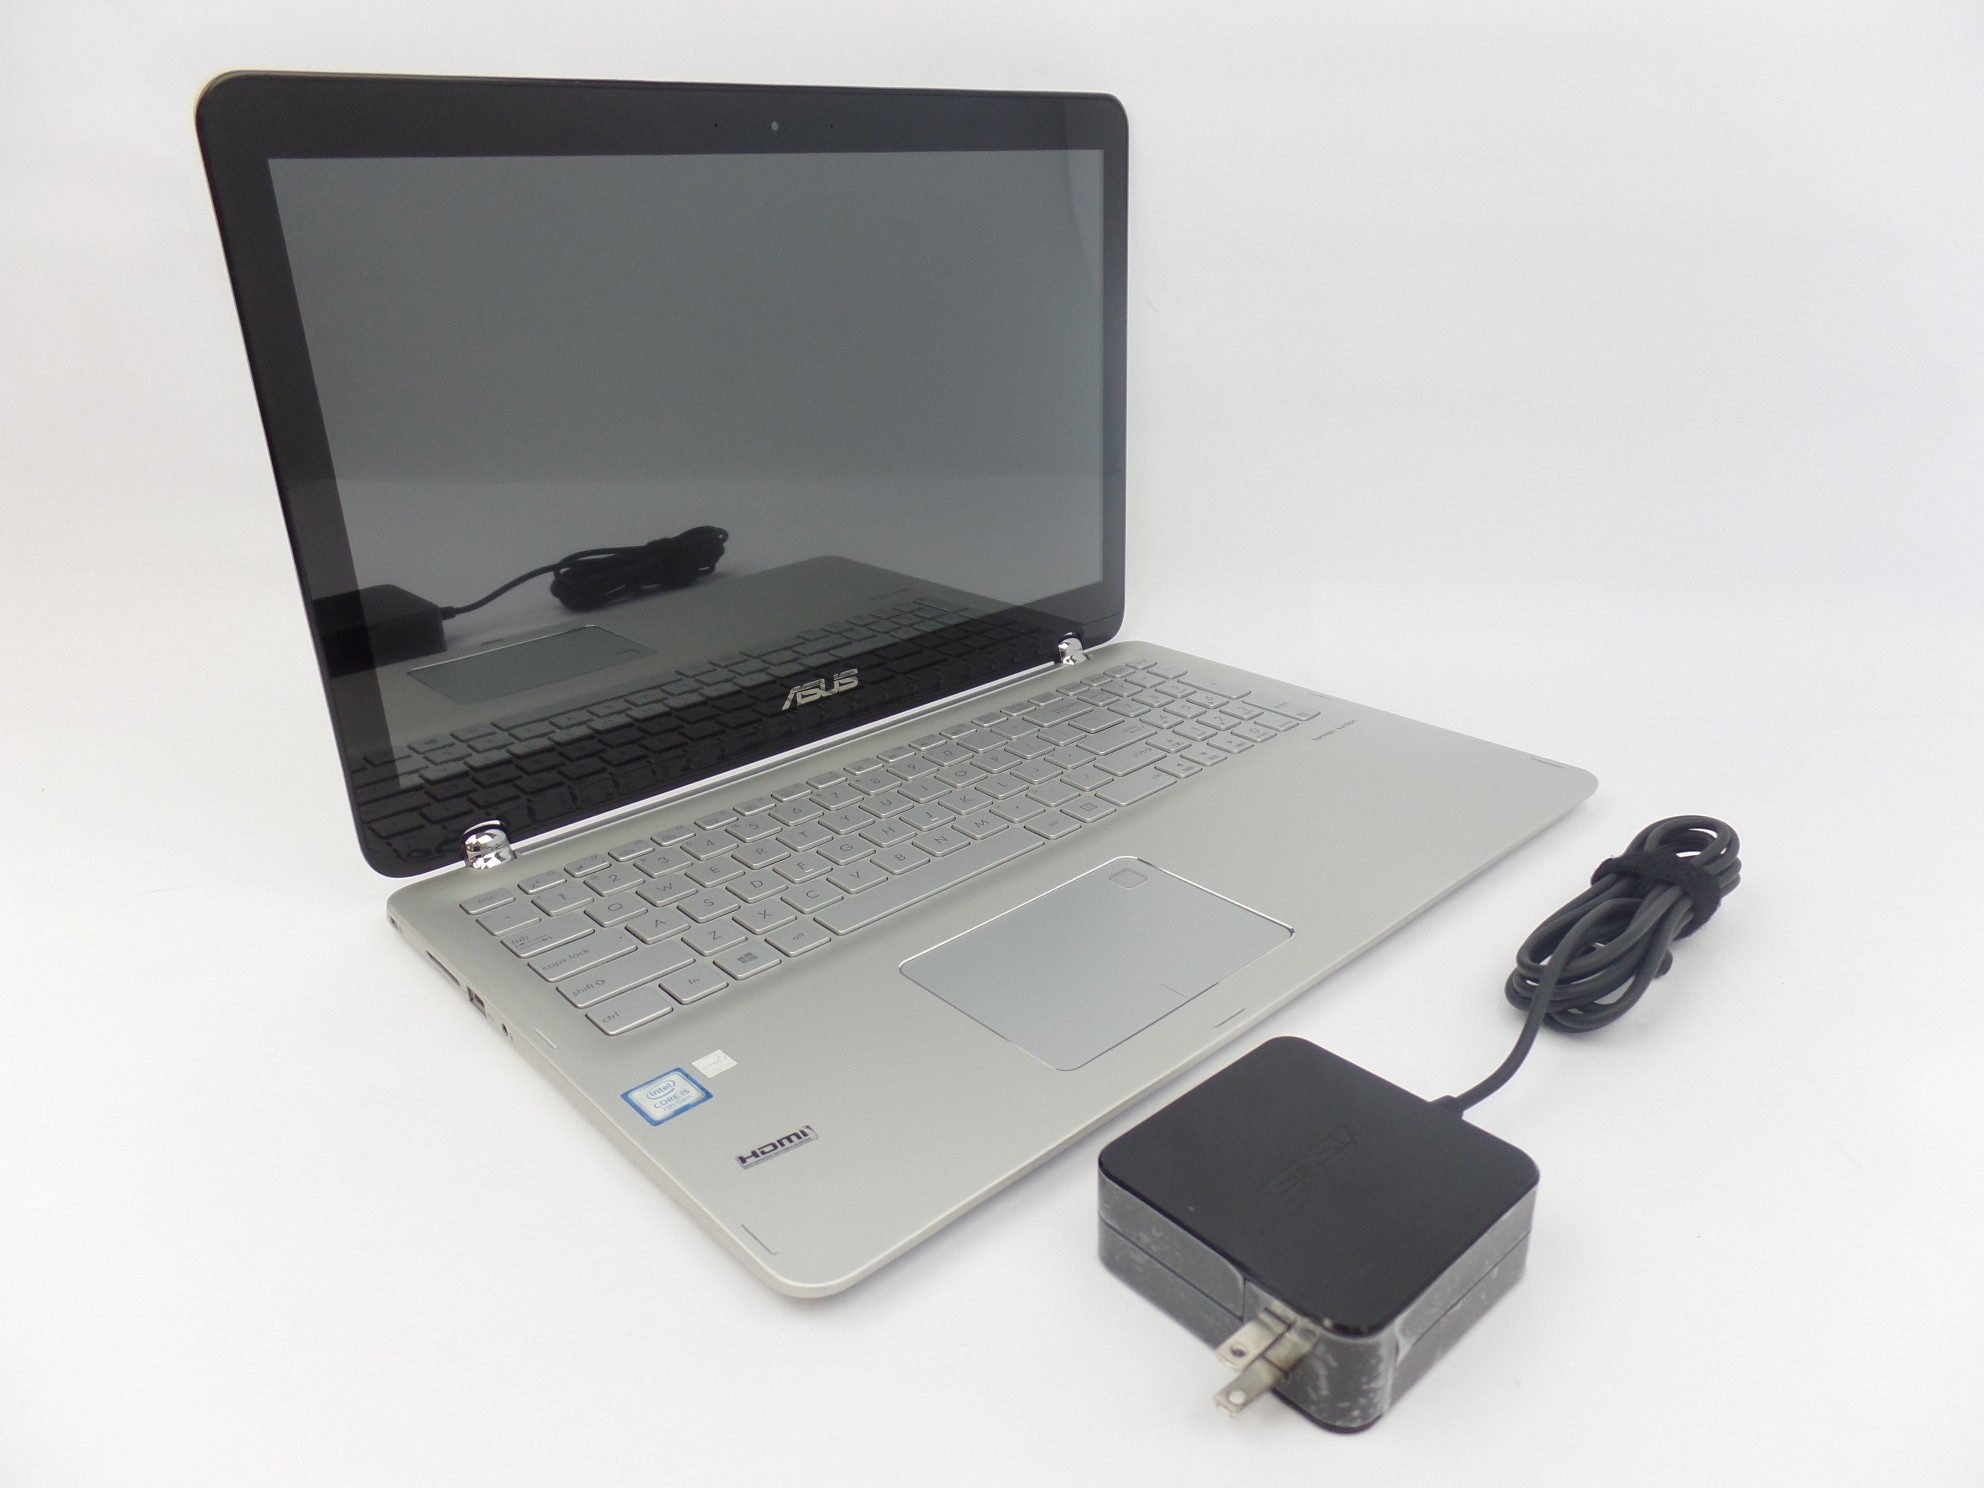 ASUS Q504UA 15.6" FHD Touch i5-7200U 2.5GHz 12GB 256GB SSD W10H 2in1 Laptop U